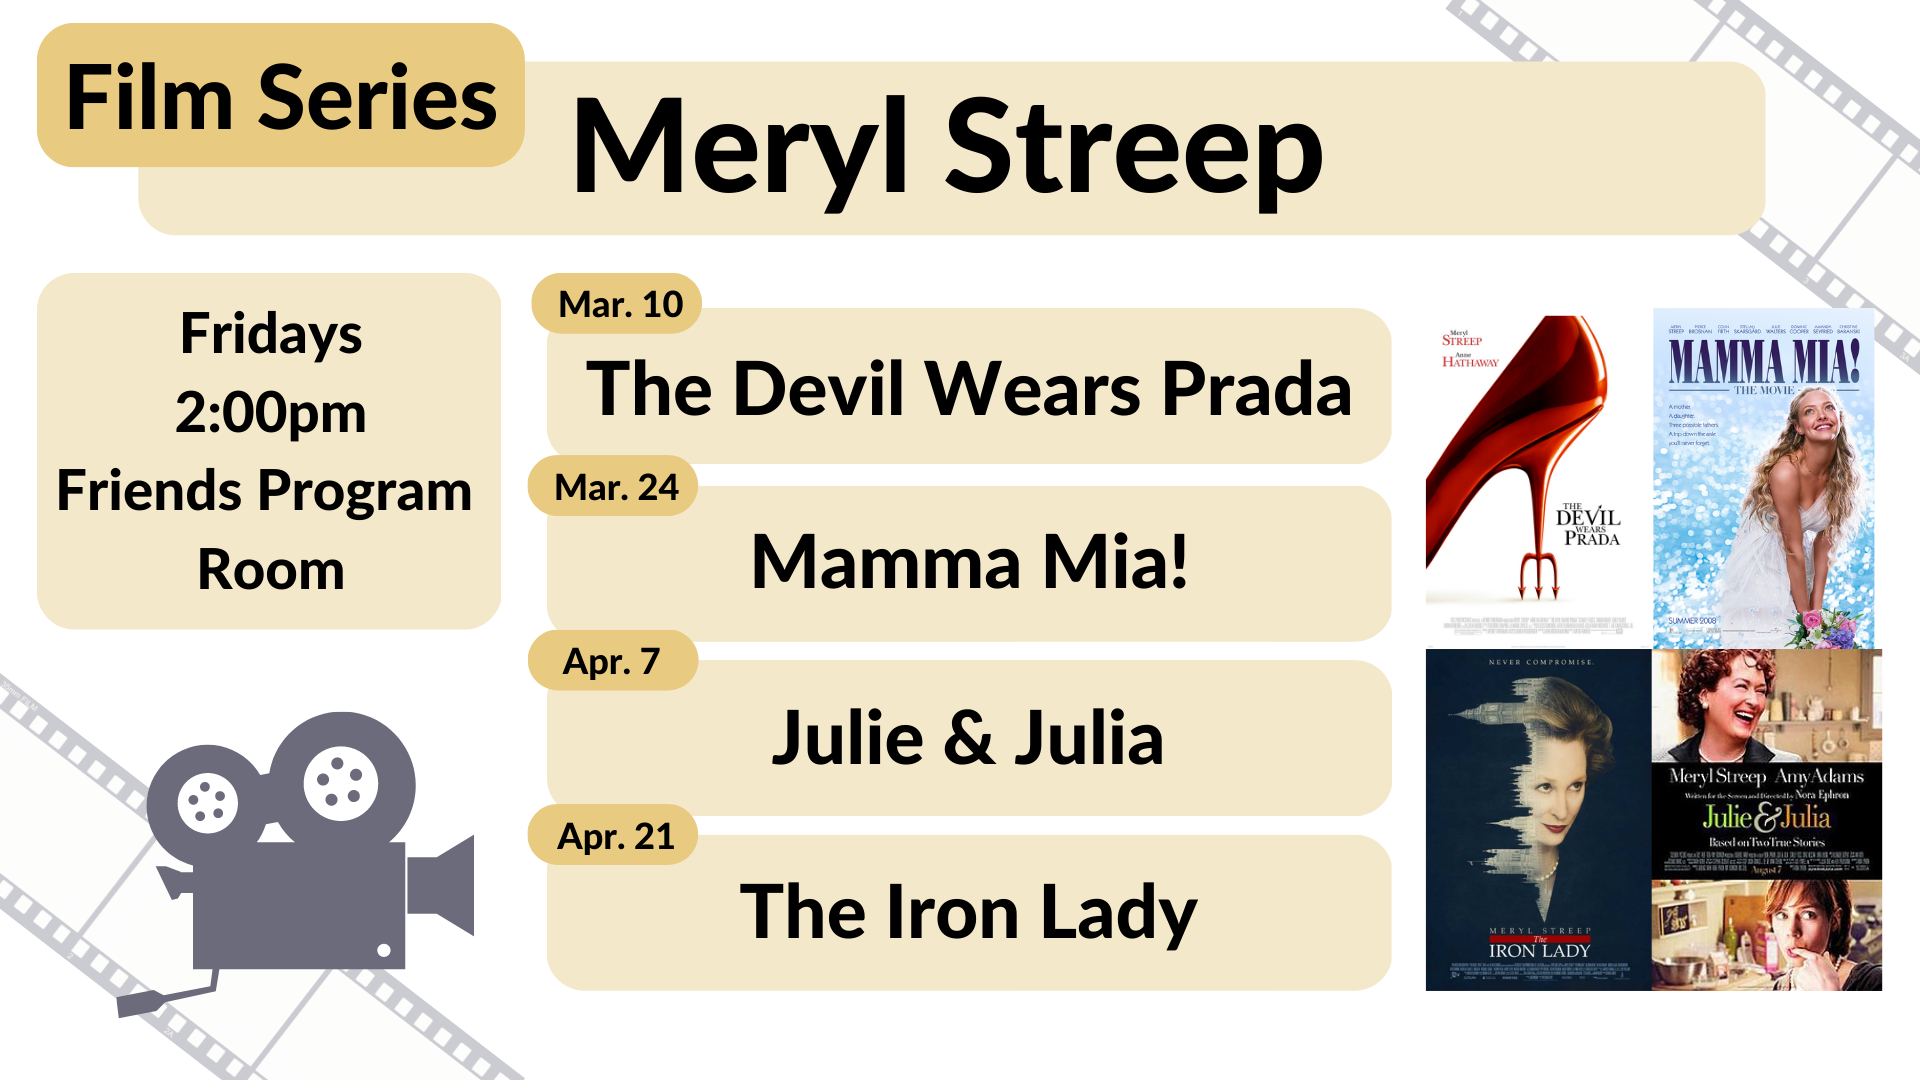 Film Series: Meryl Streep